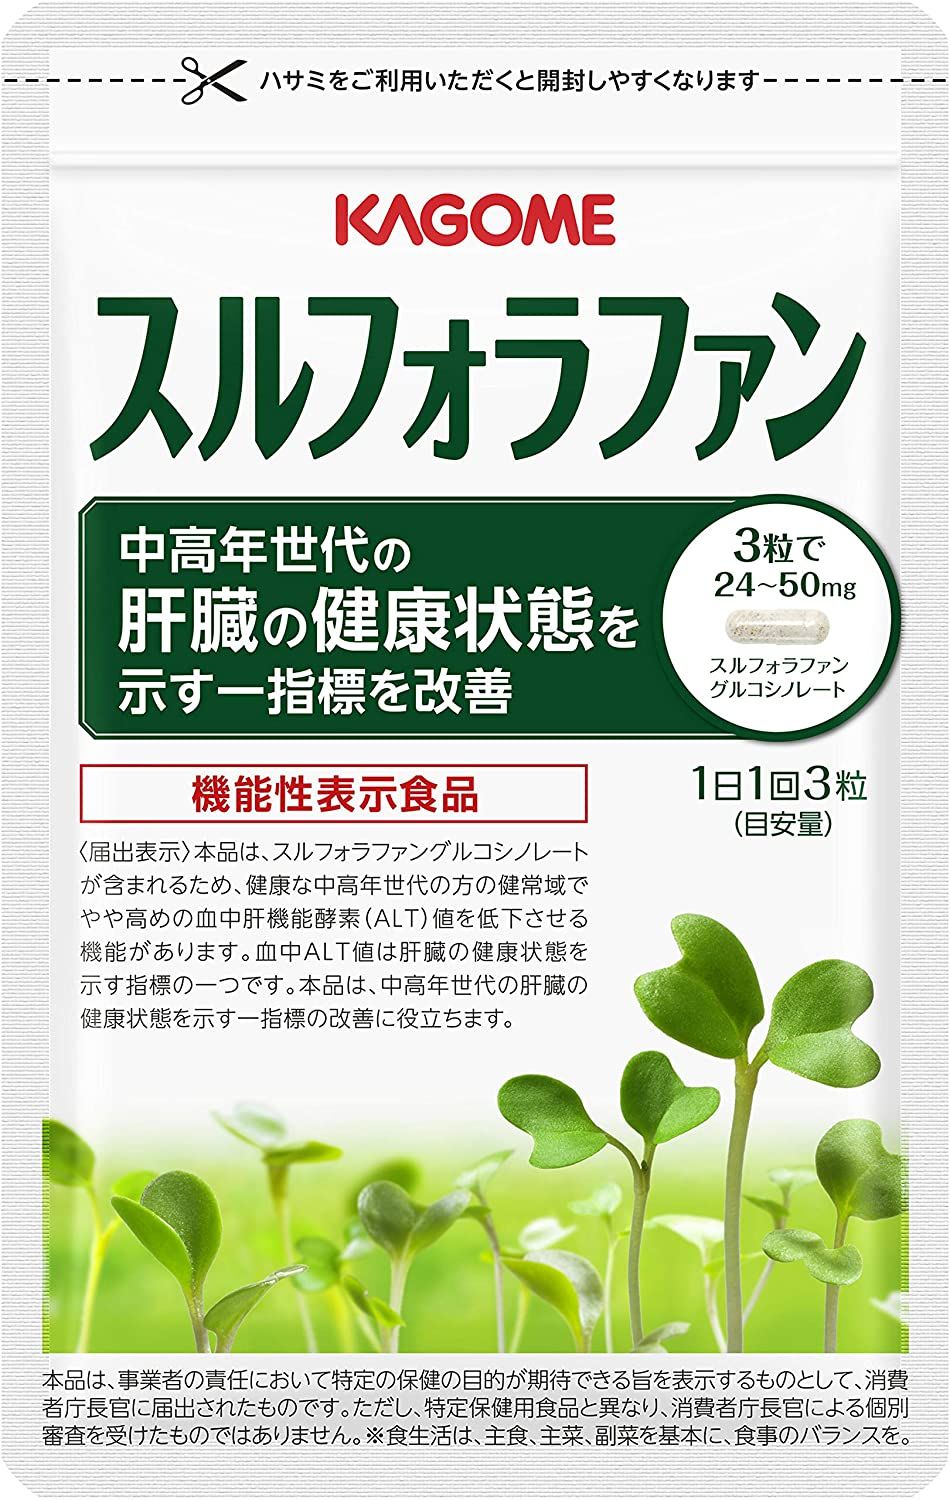 0円 ☆正規品新品未使用品 キトサン明日葉青汁 30包 6個セット